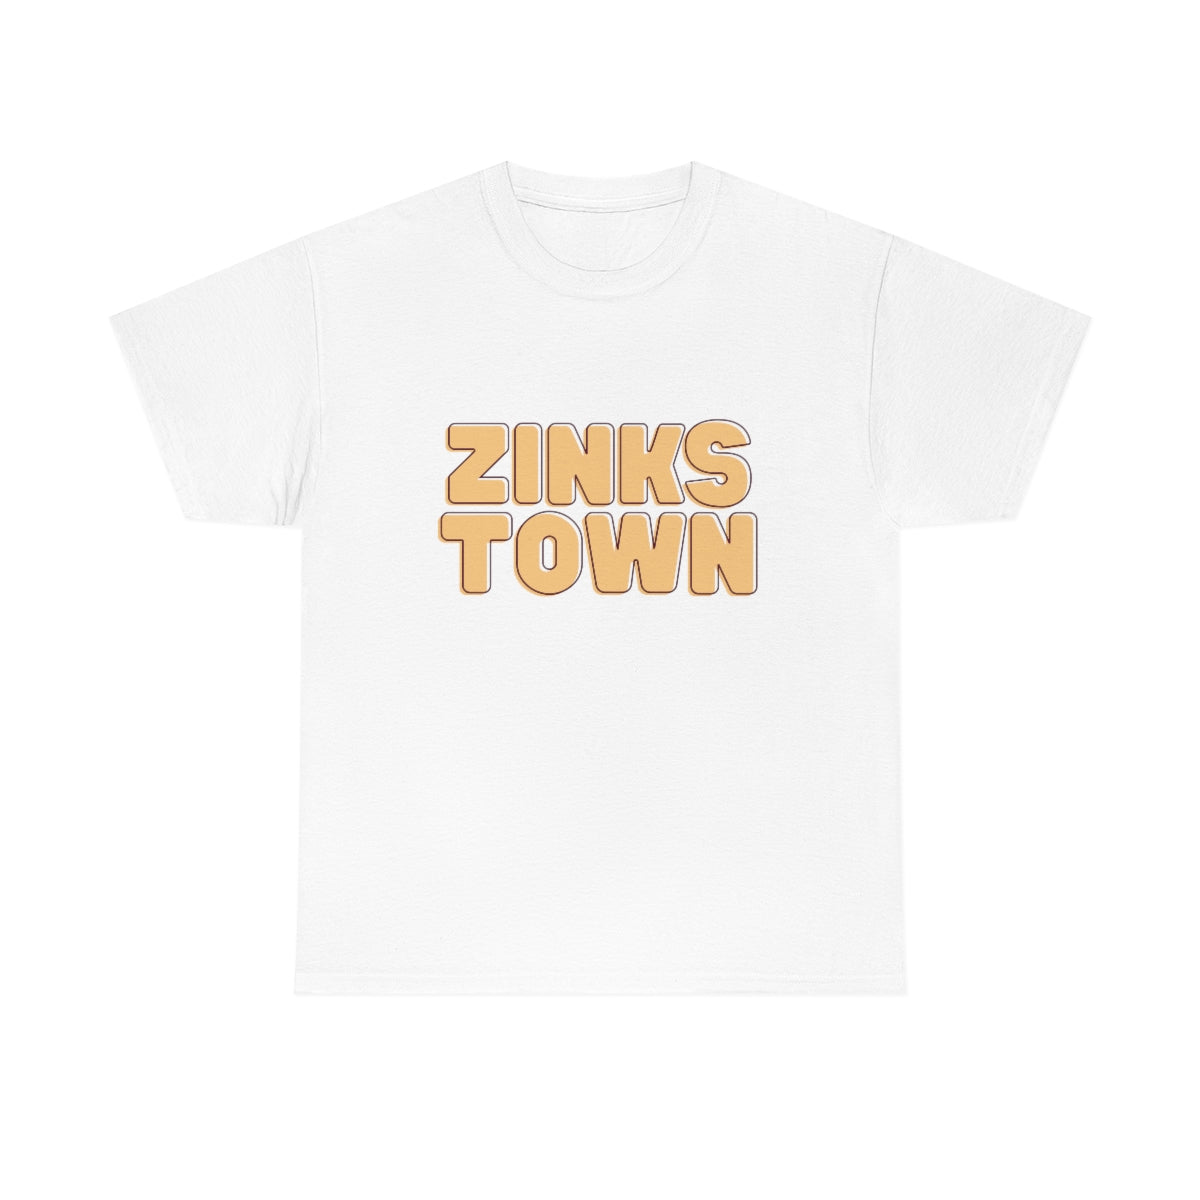 Zinks Town Unisex Heavy Cotton Tee